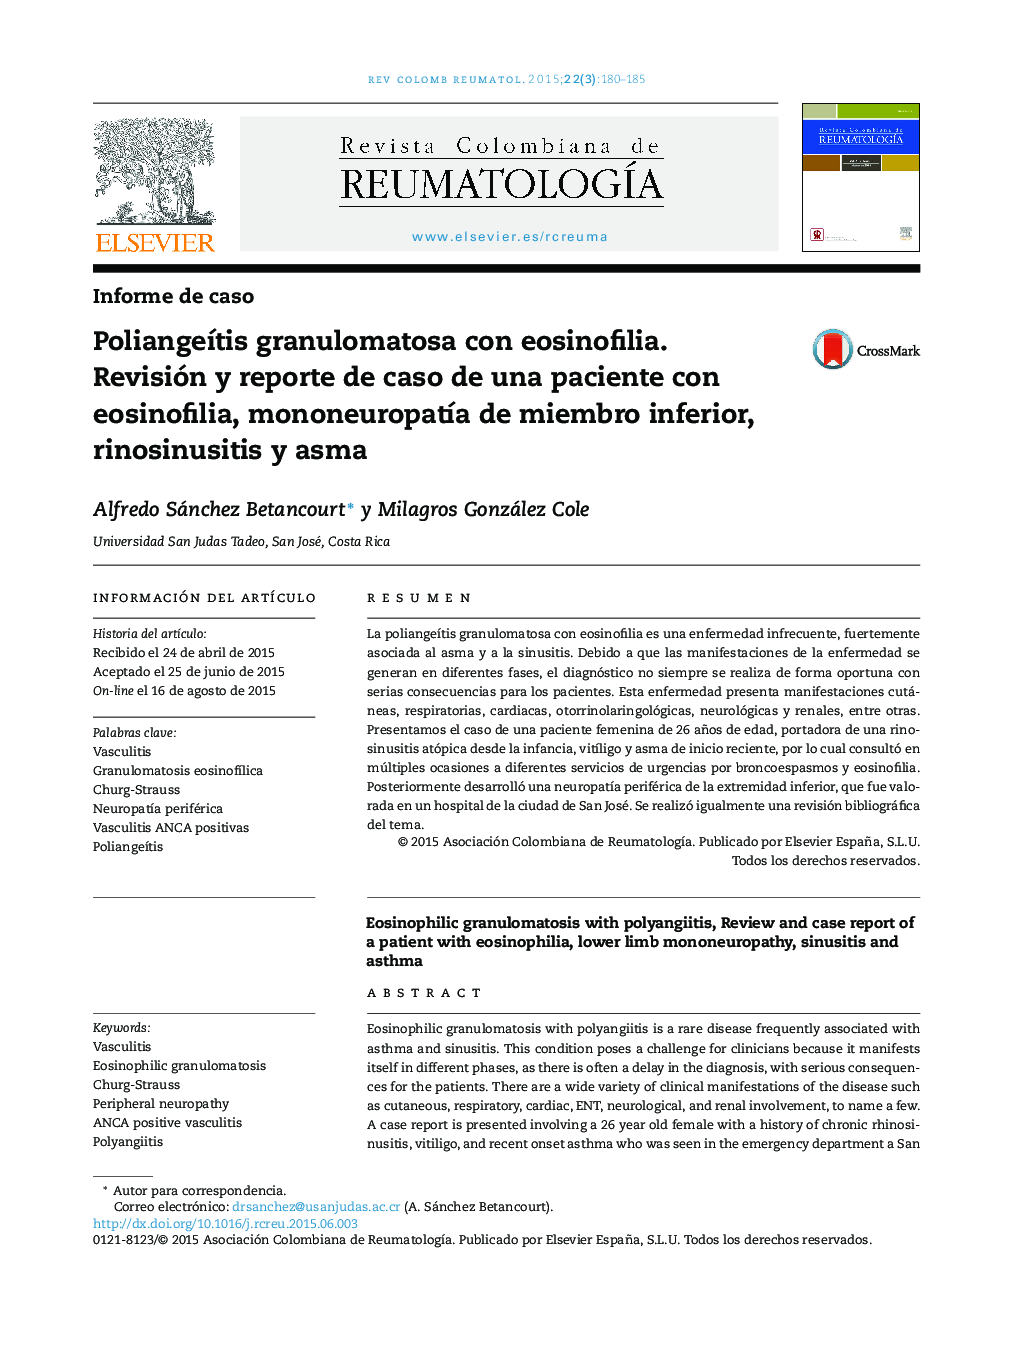 PoliangeÃ­tis granulomatosa con eosinofilia. Revisión y reporte de caso de una paciente con eosinofilia, mononeuropatÃ­a de miembro inferior, rinosinusitis y asma